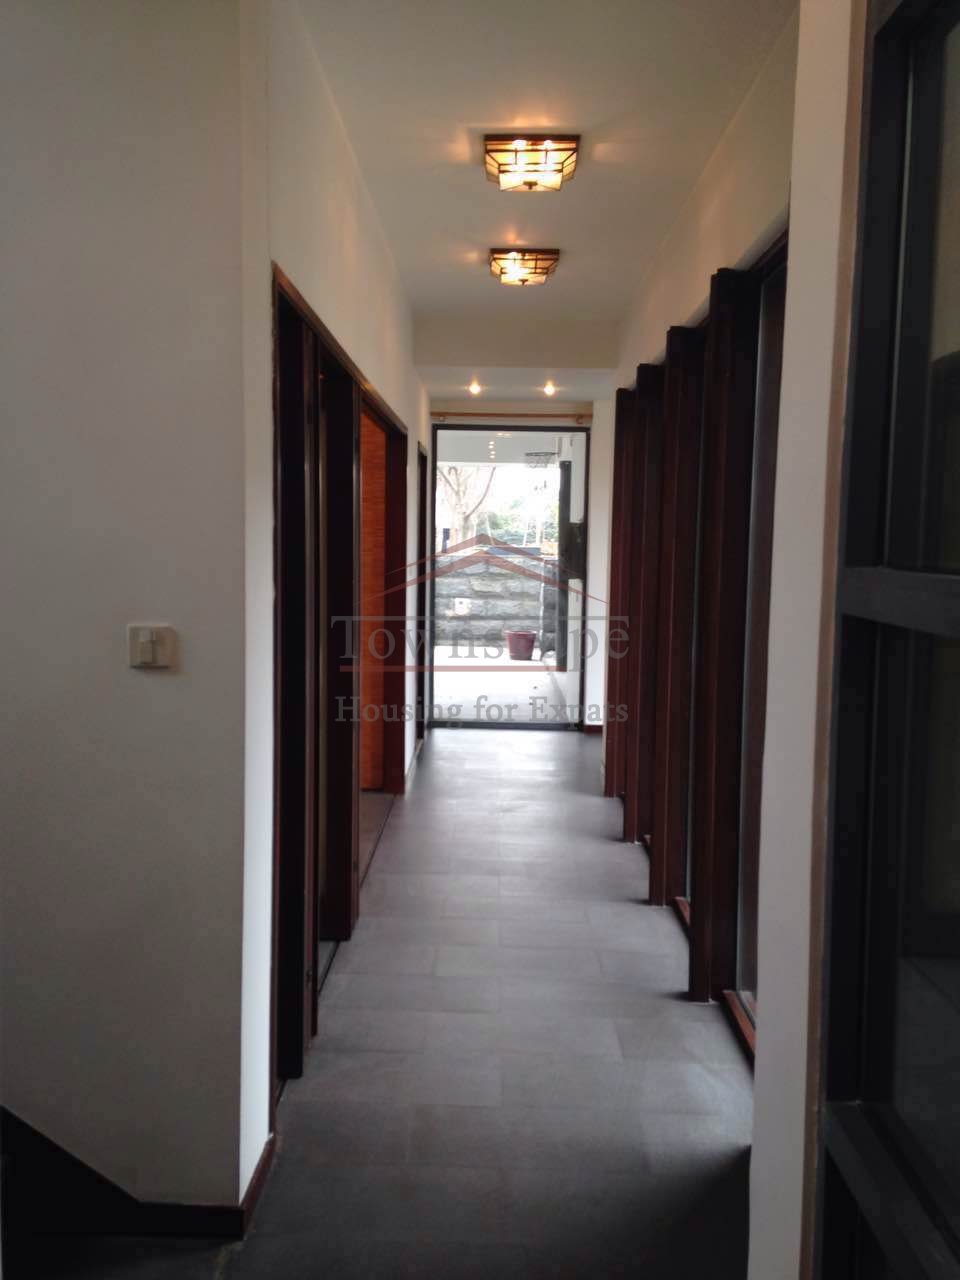  Exclusive 4 bedroom Villa with Floor heating in West Shanghai